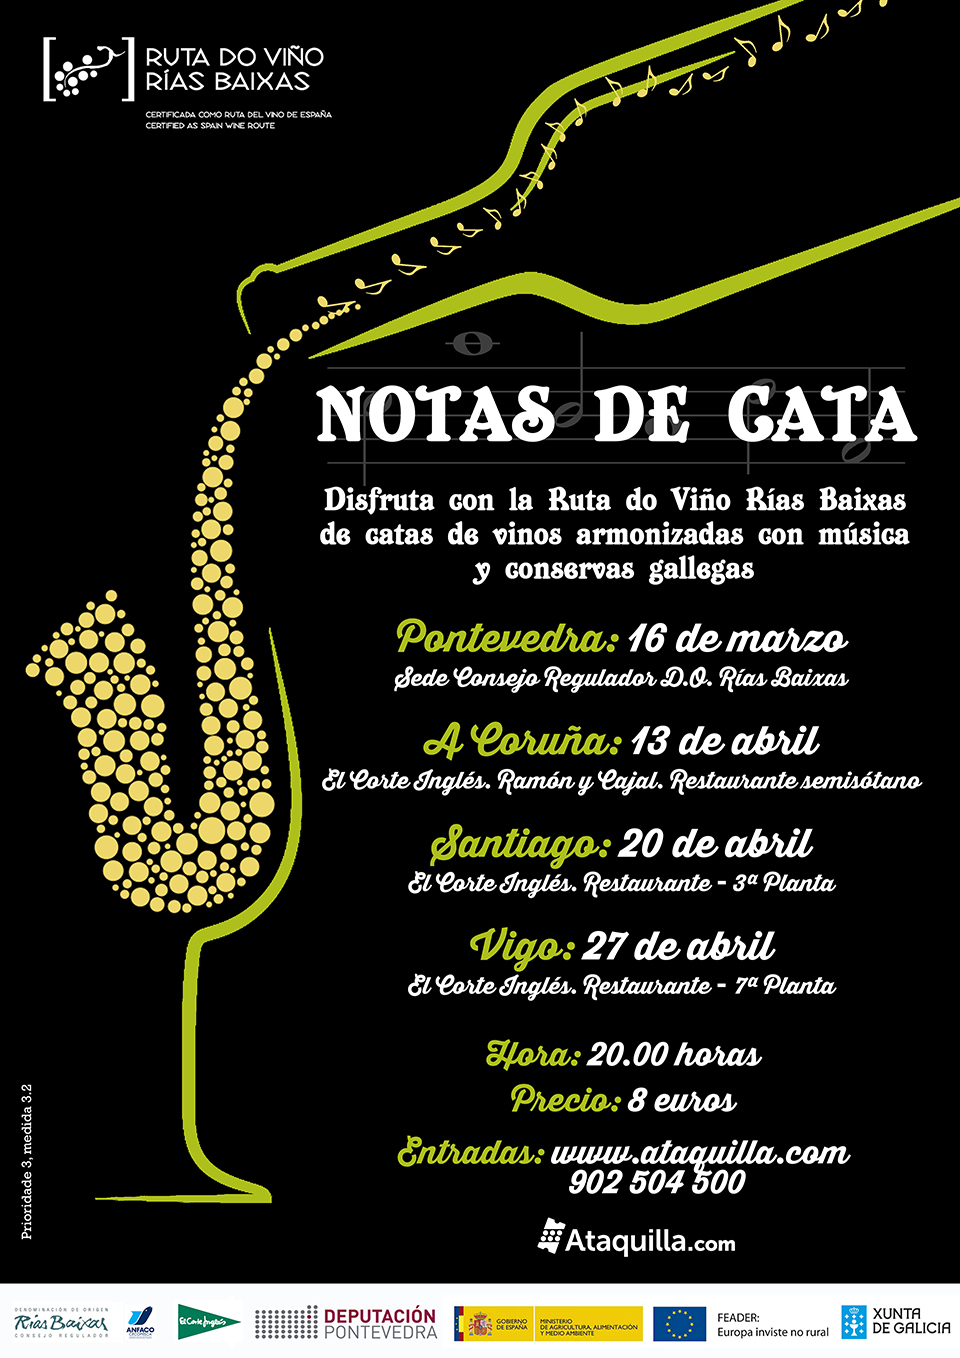 Las ‘Notas de Cata’ inauguran la programación anual de la Ruta do Viño Rías Baixas con degustación de vinos, conservas gallegas y música